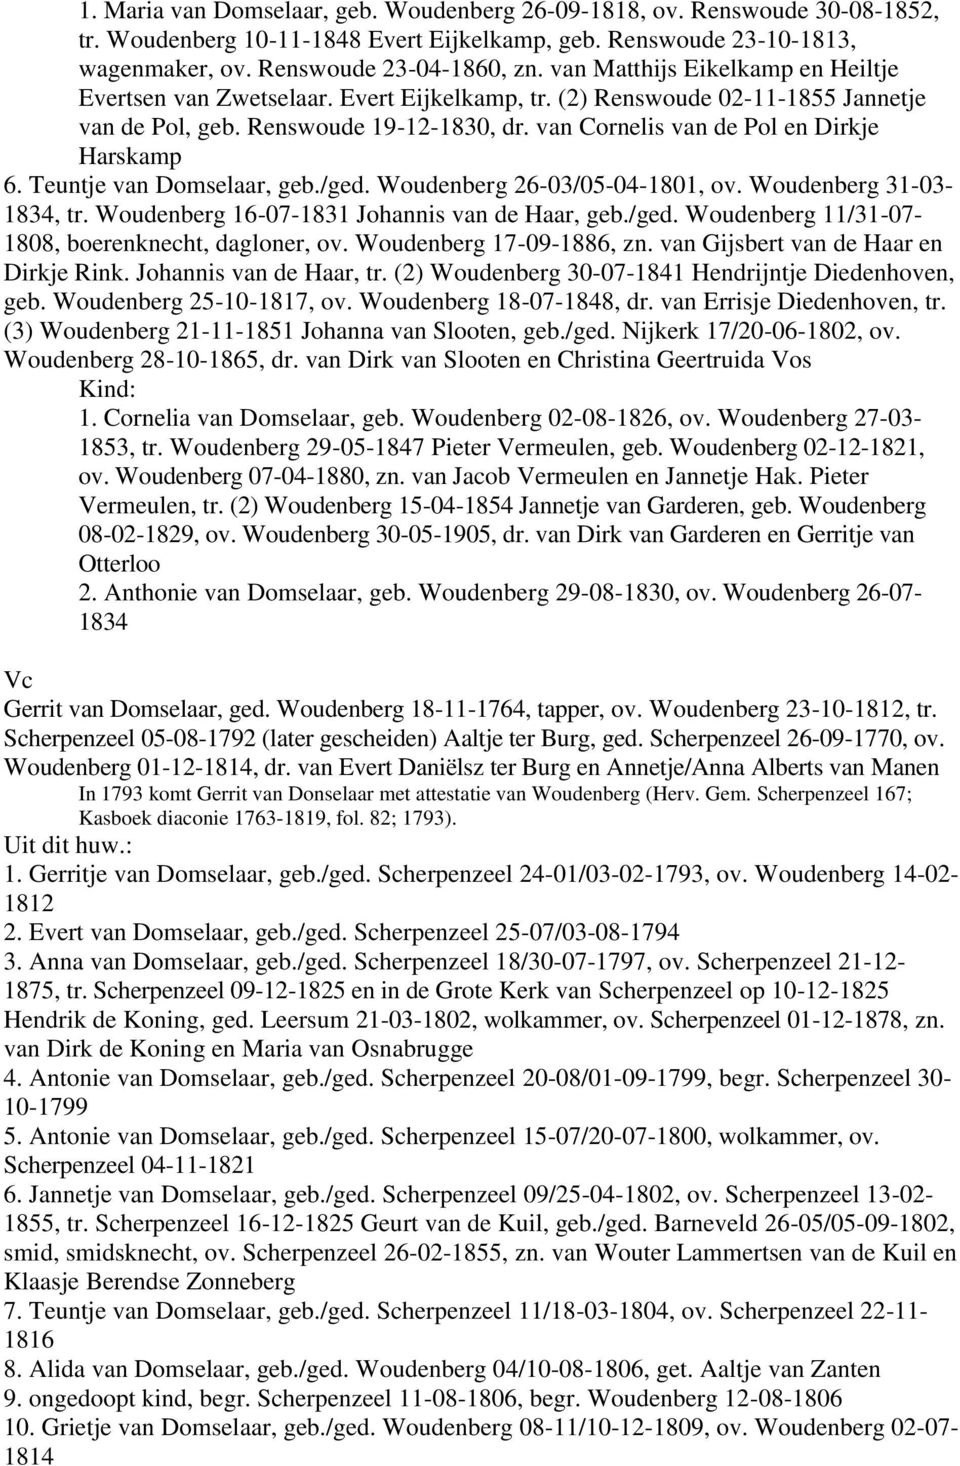 van Cornelis van de Pol en Dirkje Harskamp 6. Teuntje van Domselaar, geb./ged. Woudenberg 26-03/05-04-1801, ov. Woudenberg 31-03- 1834, tr. Woudenberg 16-07-1831 Johannis van de Haar, geb./ged. Woudenberg 11/31-07- 1808, boerenknecht, dagloner, ov.